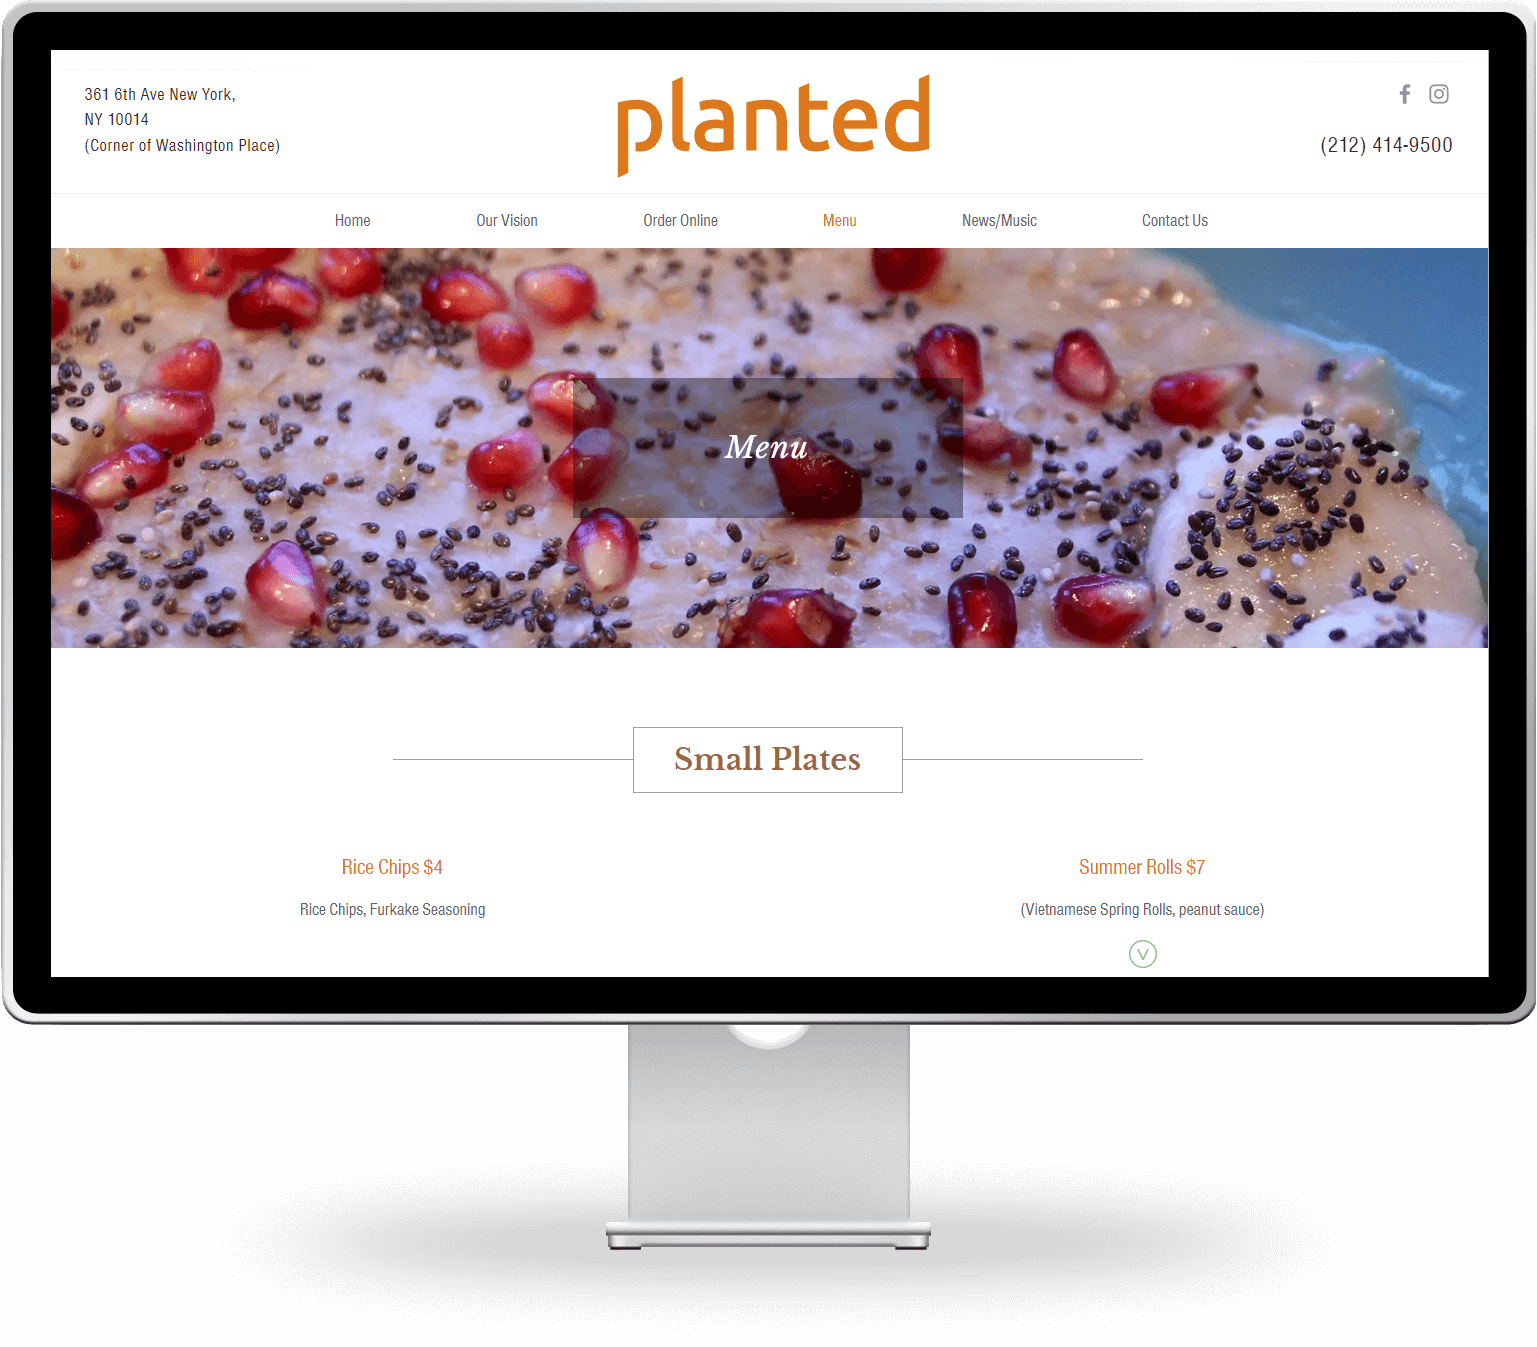 planted menu page